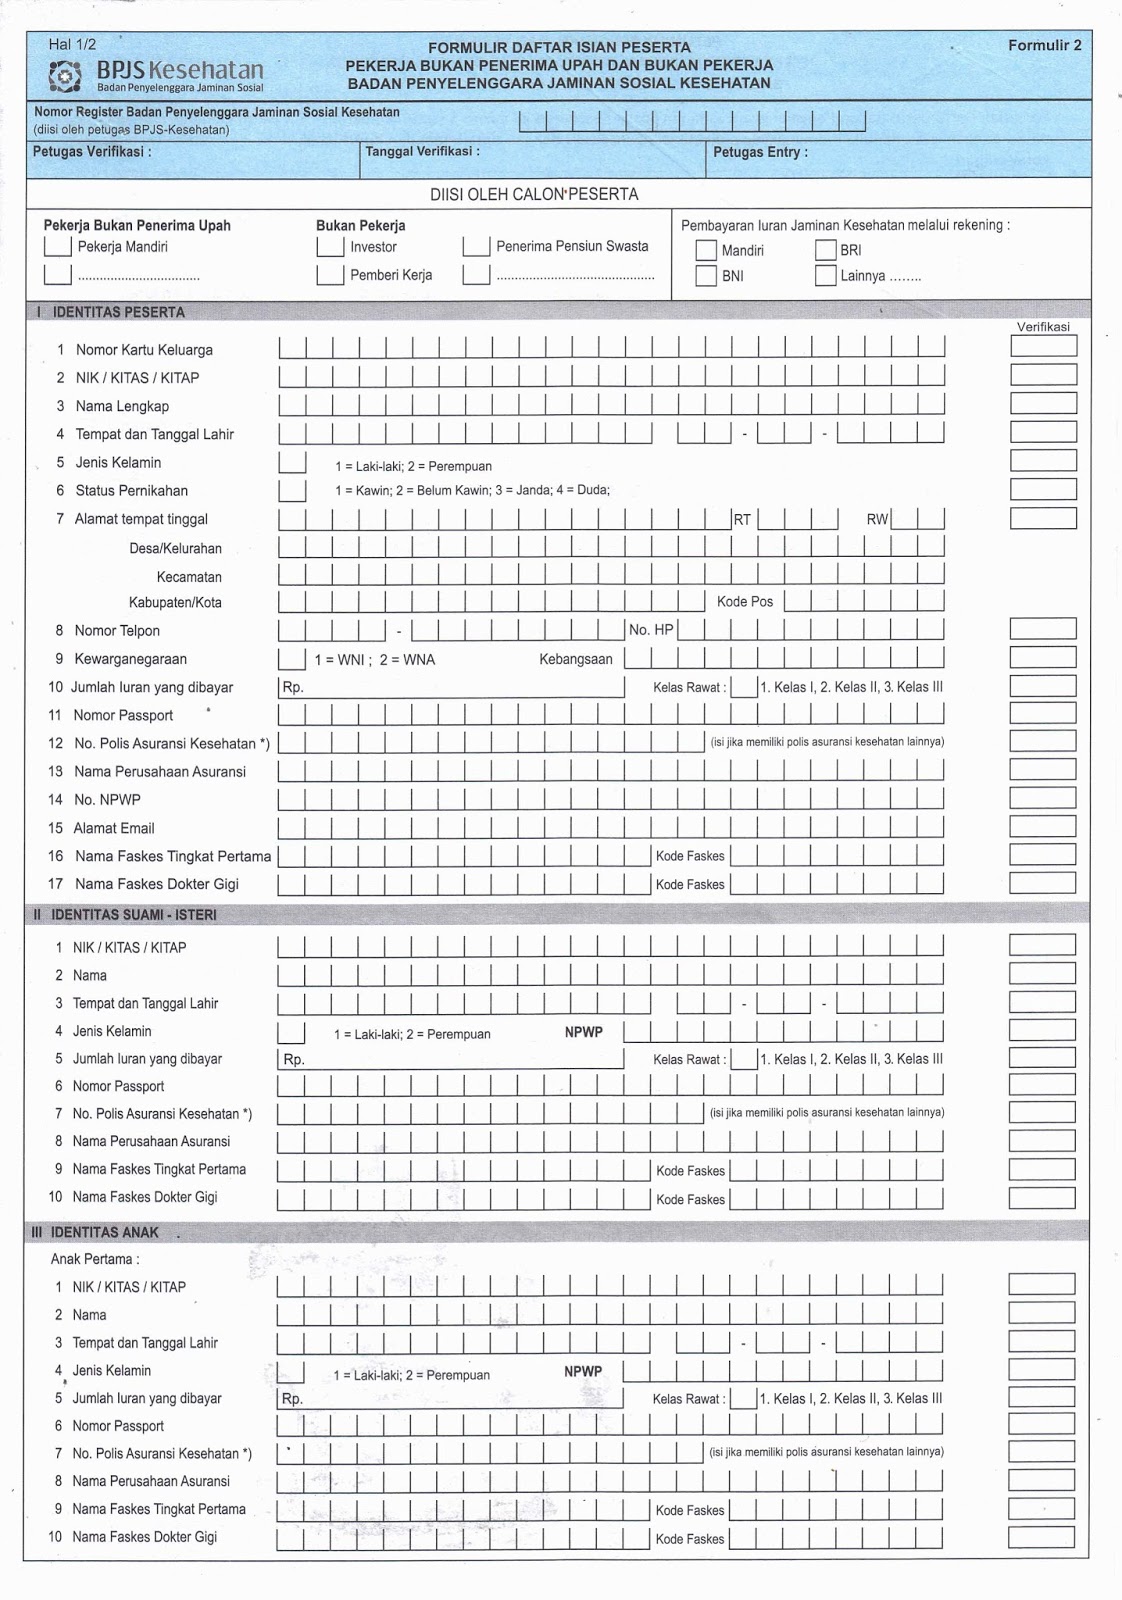 Lembar Brosur dan Formulir Pendaftaran BPJS Kesehatan